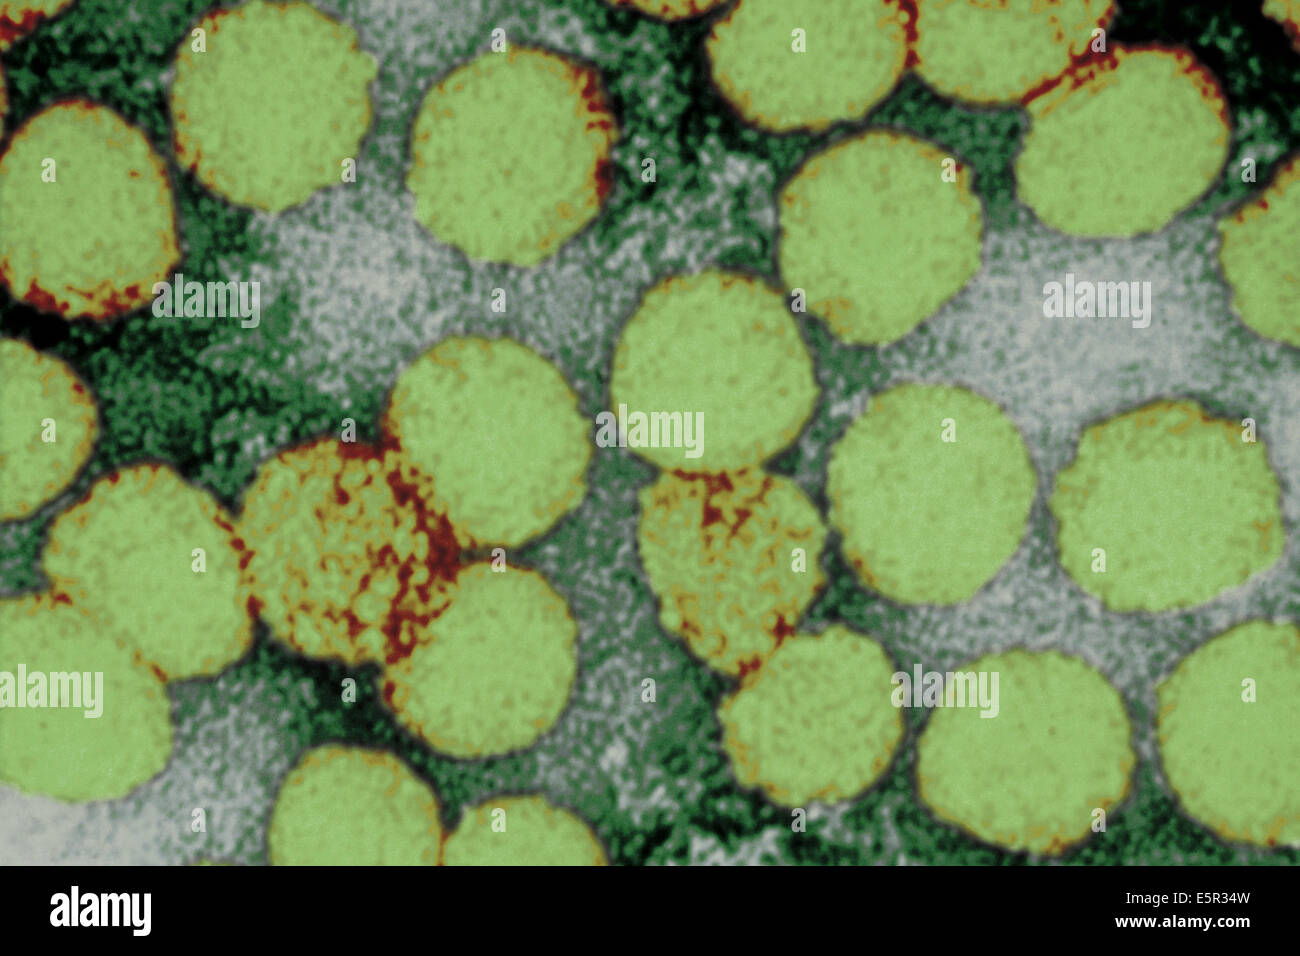 Renforcement de couleur micrographie électronique à transmission (TEM) de virus de la fièvre jaune, transmise à l'homme par l'Aedes aegypti Banque D'Images